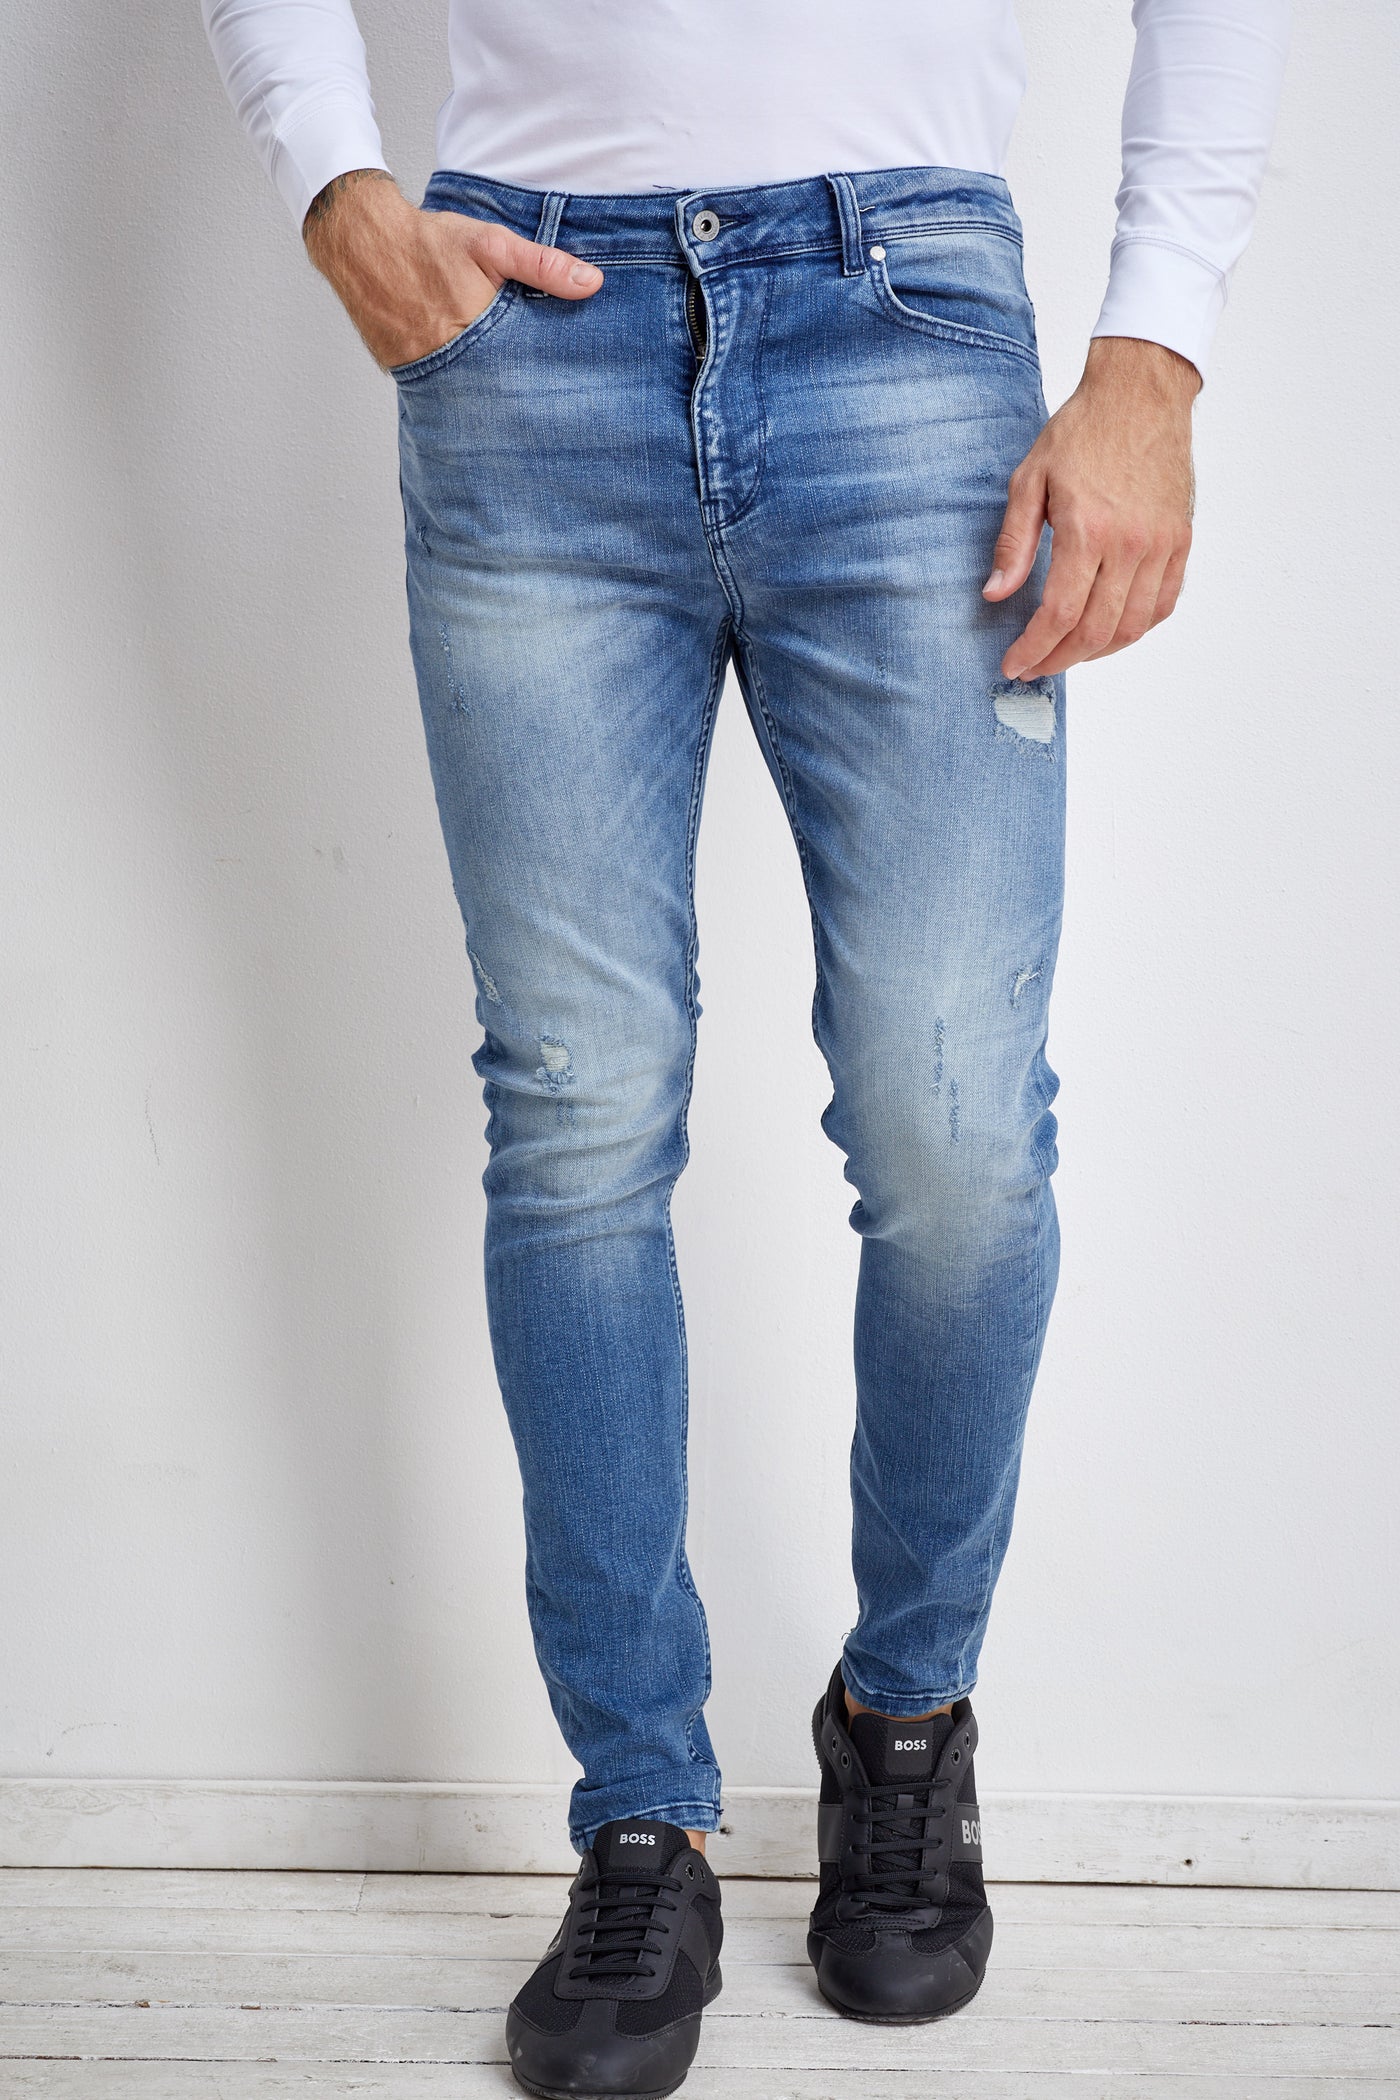 מכנס ג'ינס סקיני בצבע כחול בהיר